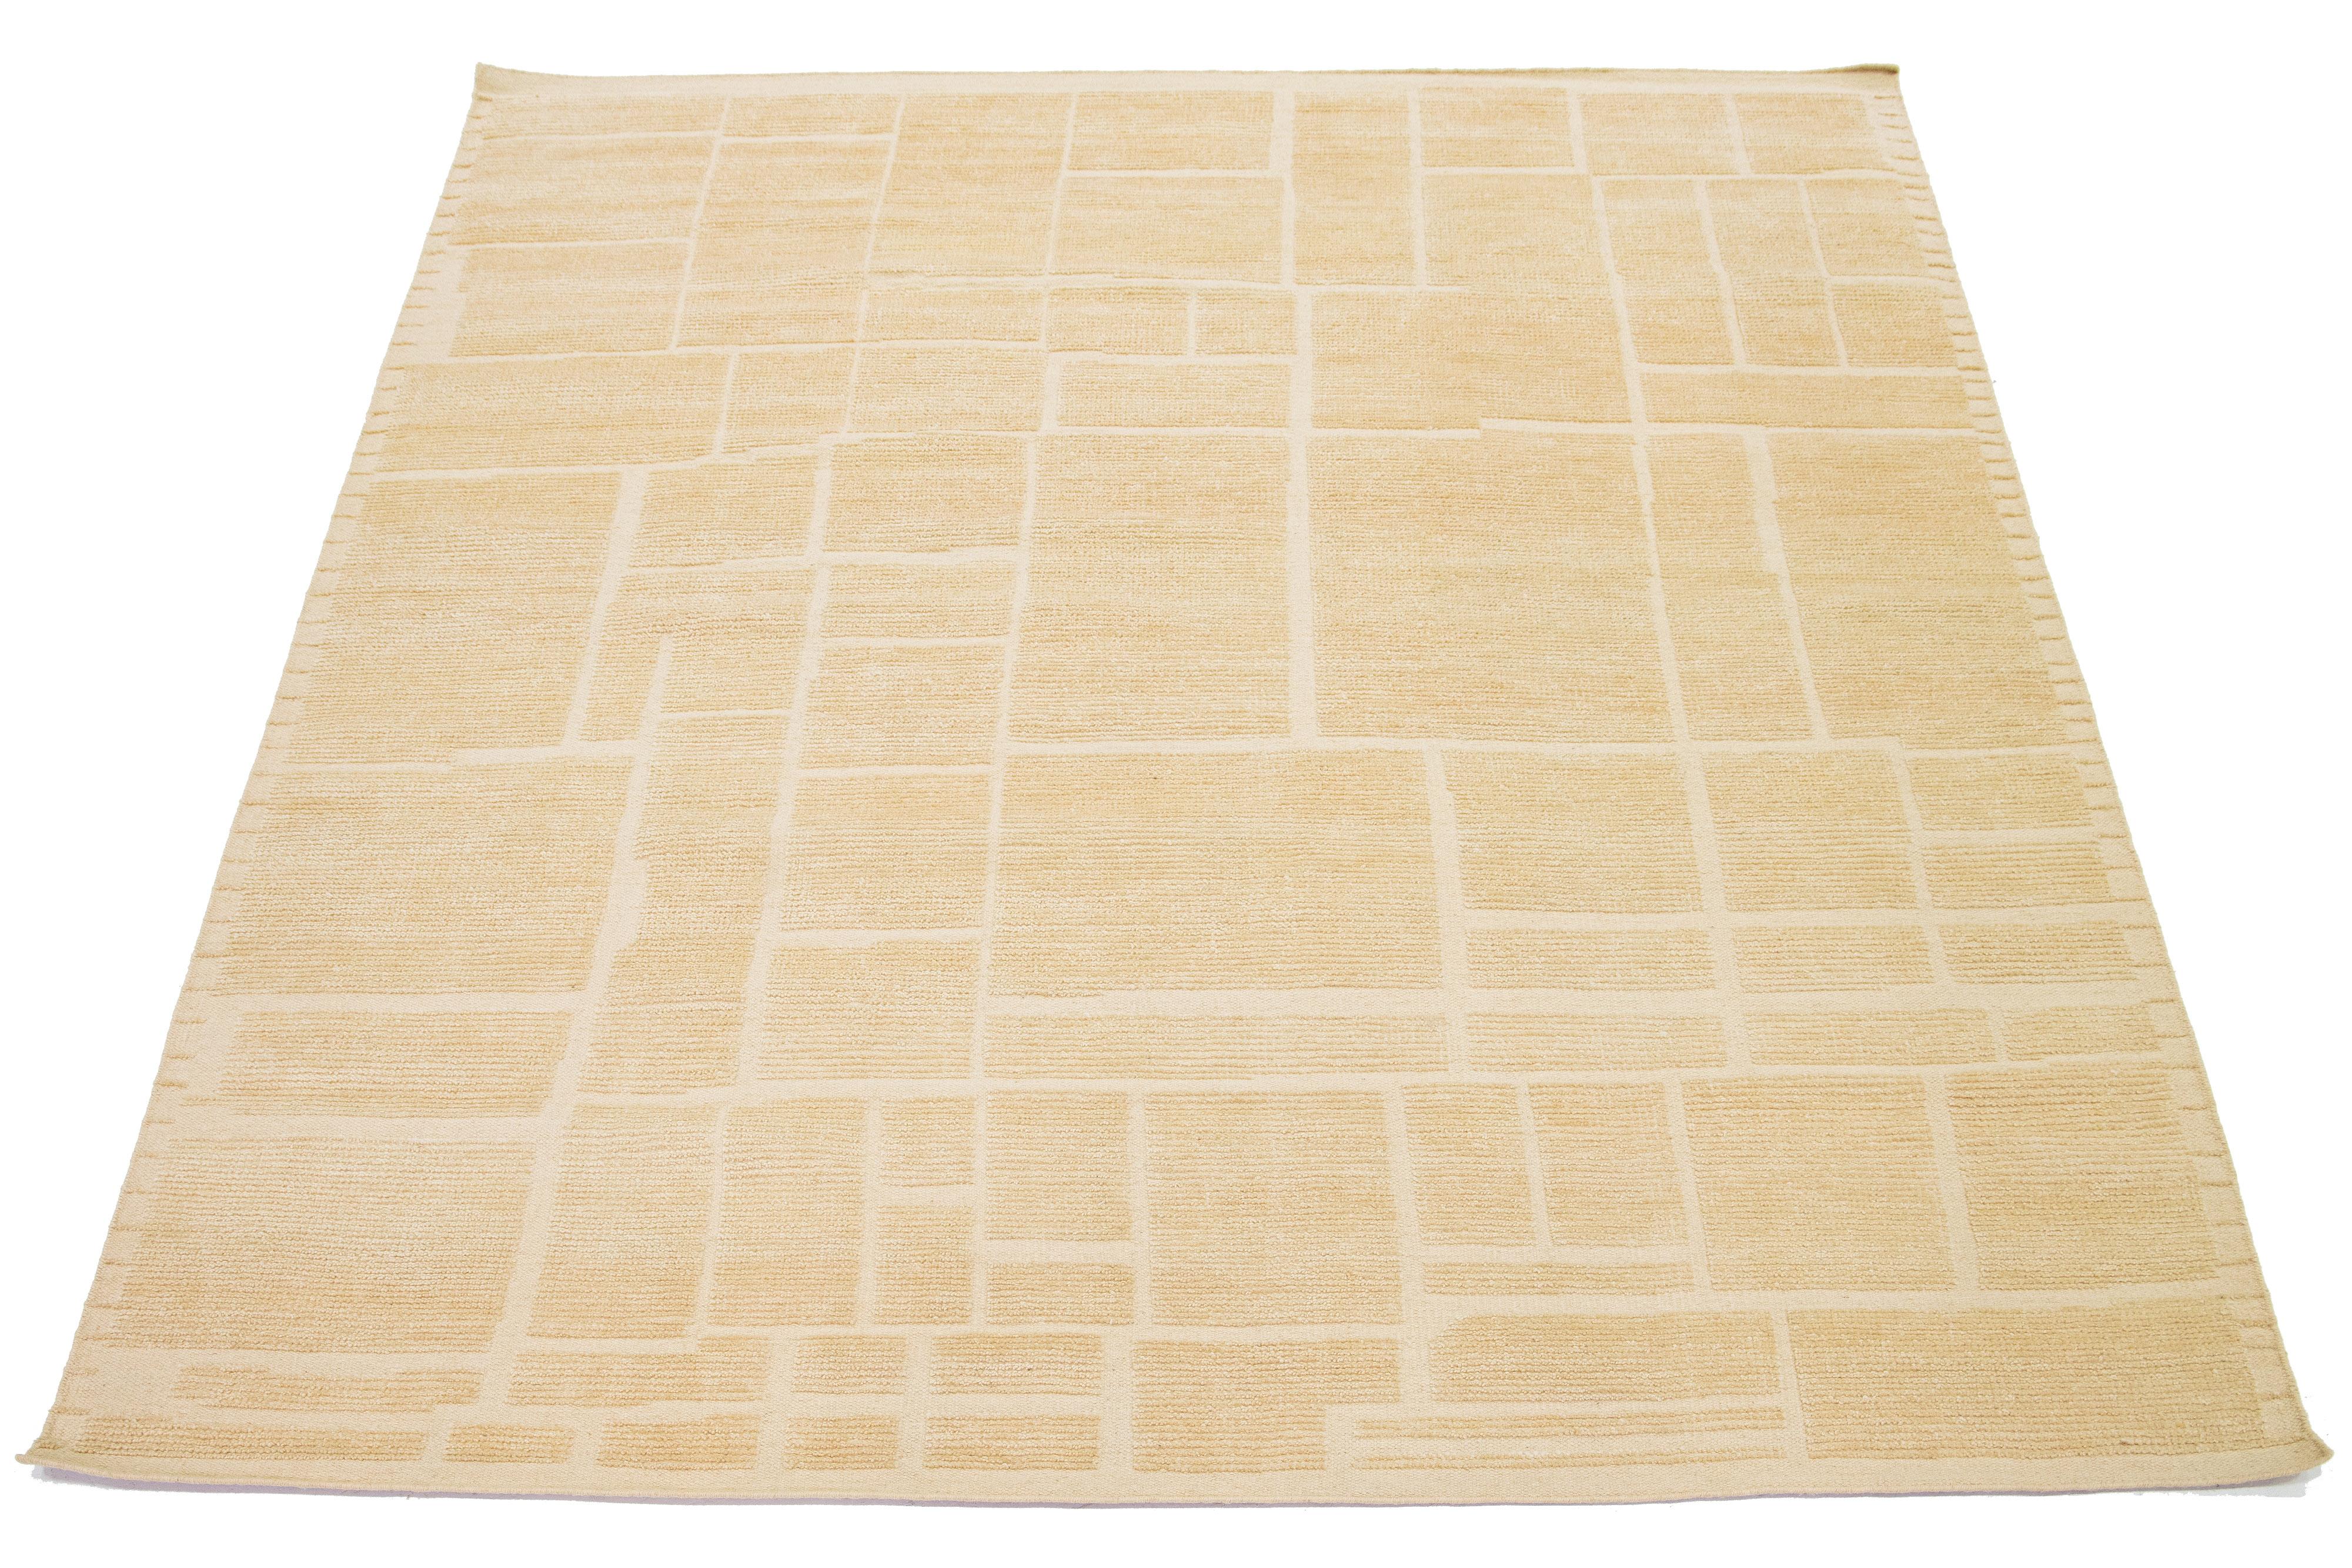 Ce magnifique tapis moderne de style marocain est noué à la main en utilisant de la laine et présente une couleur beige-tan naturelle pour le champ. Il est orné d'un superbe motif géométrique.

Ce tapis mesure 8' x 10'.